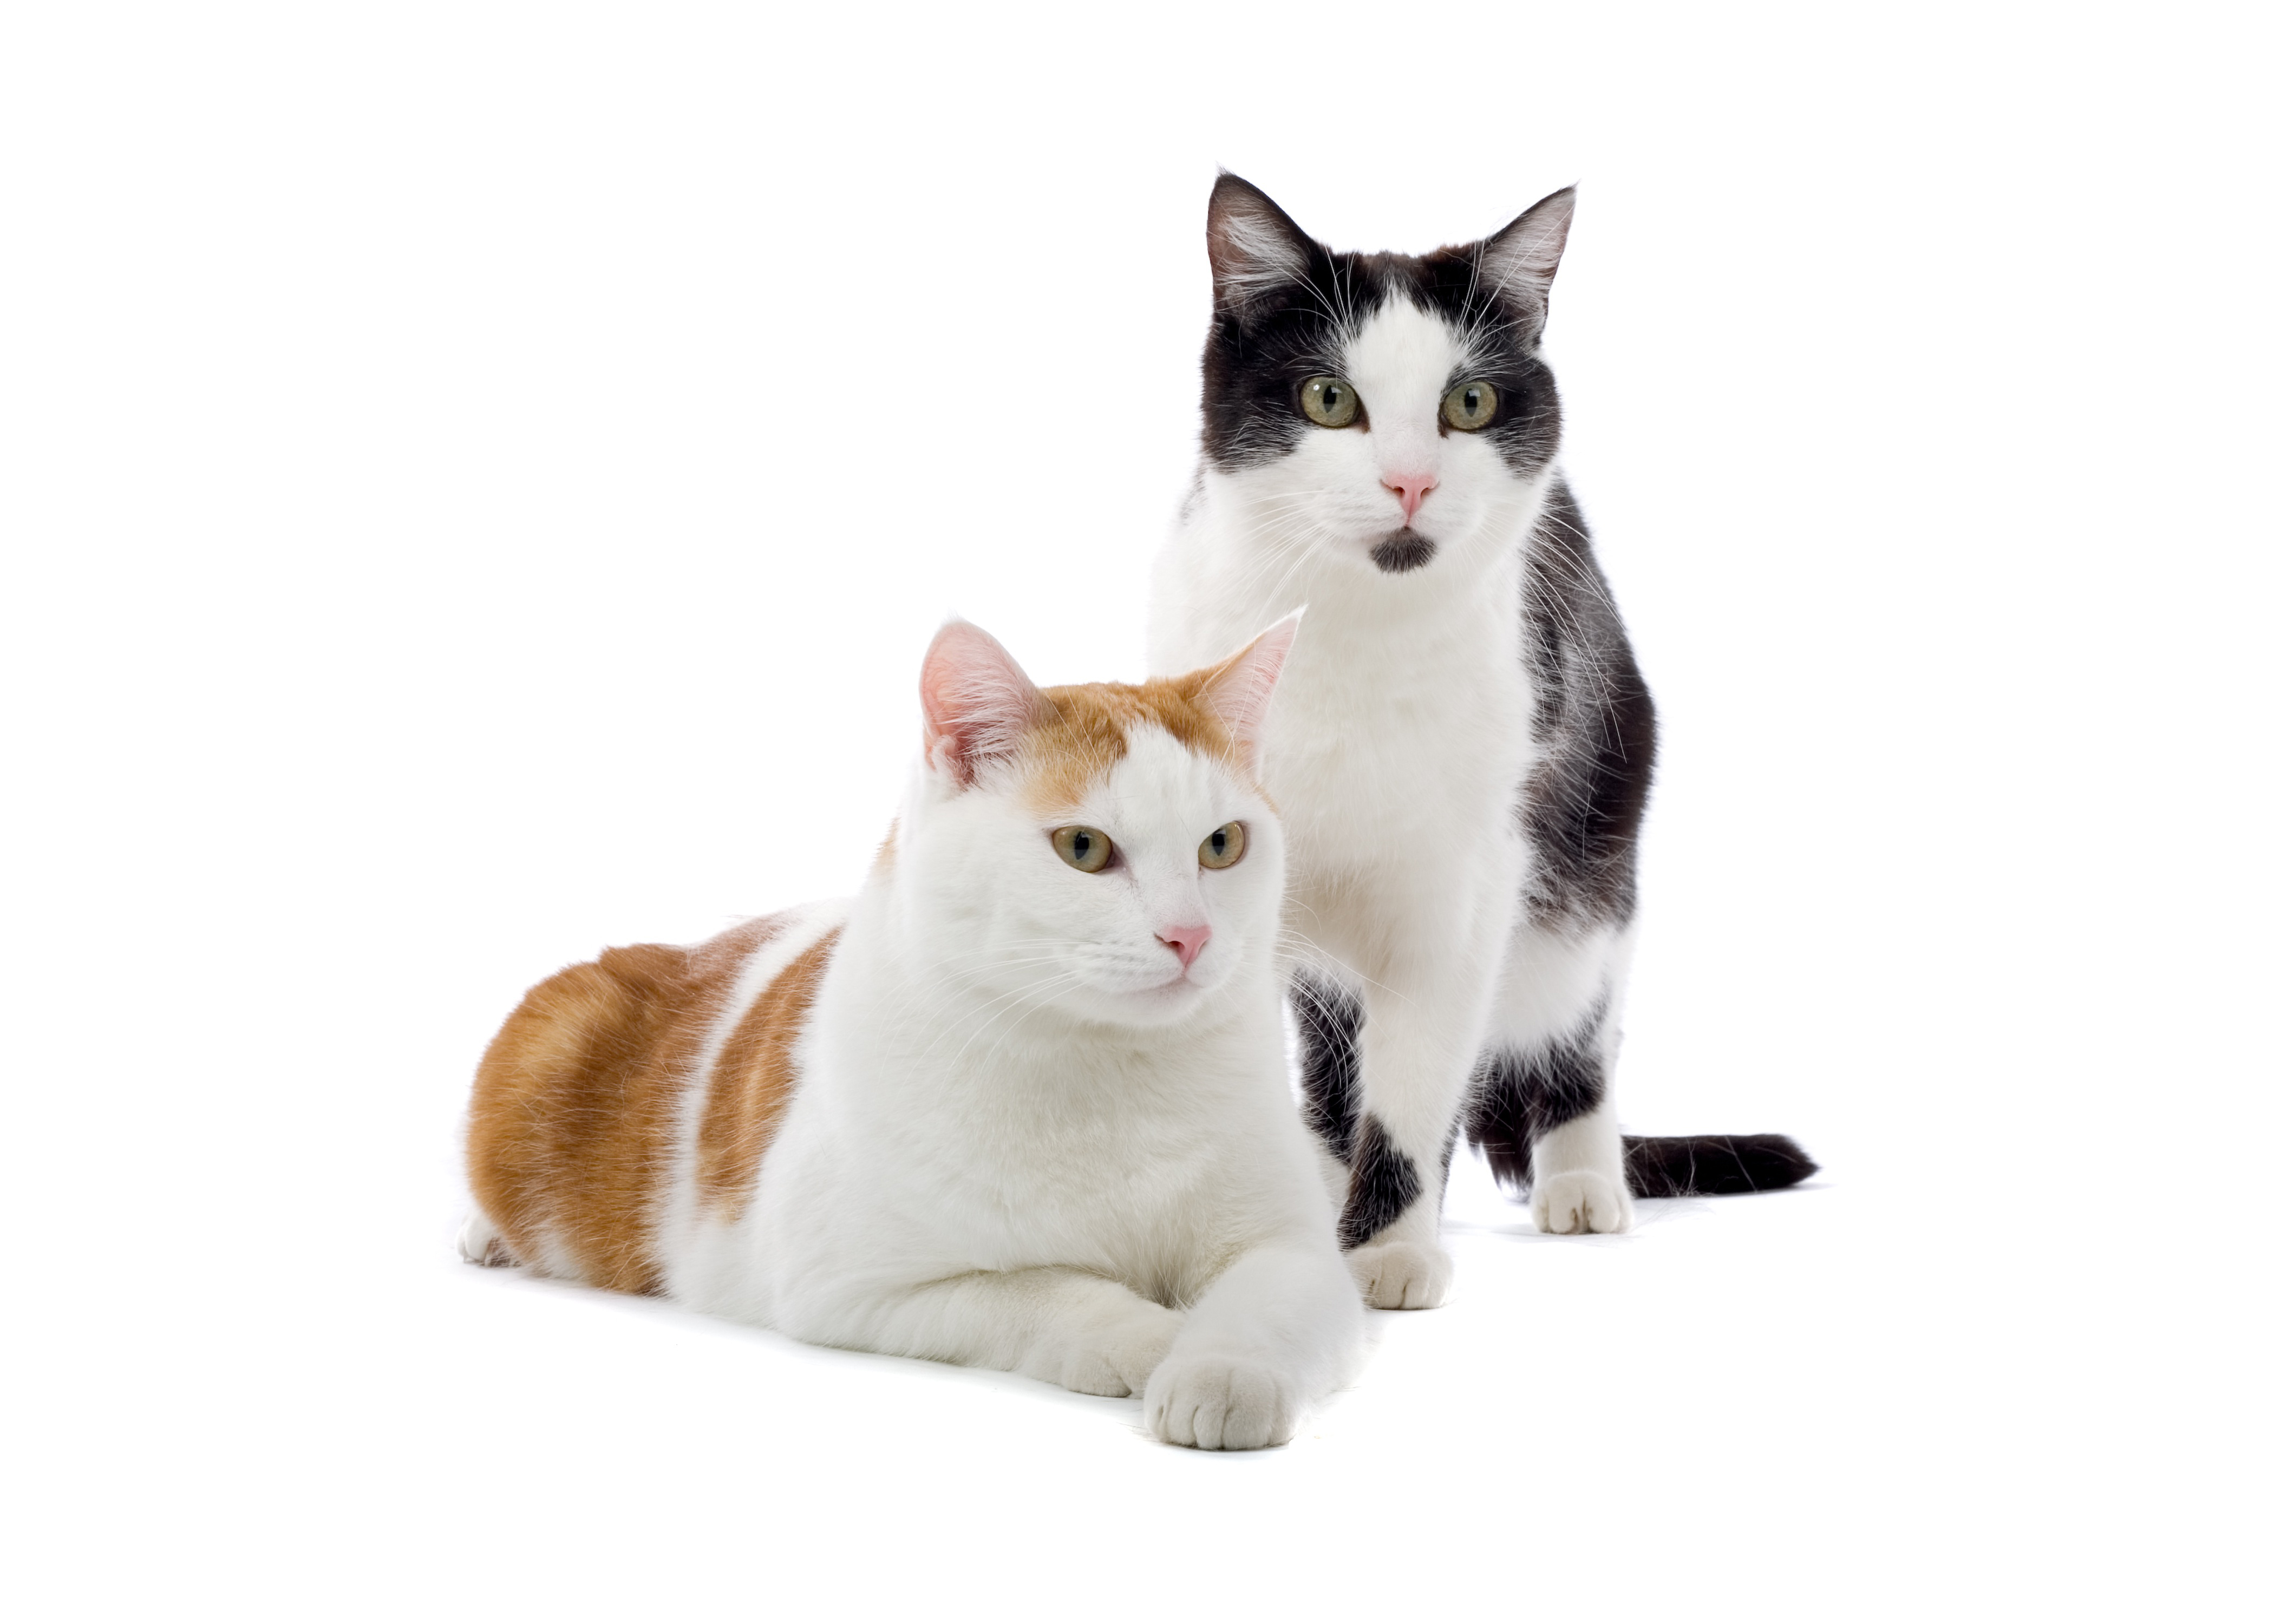 Скачать обои бесплатно Кошка, Животные, Кошки картинка на рабочий стол ПК